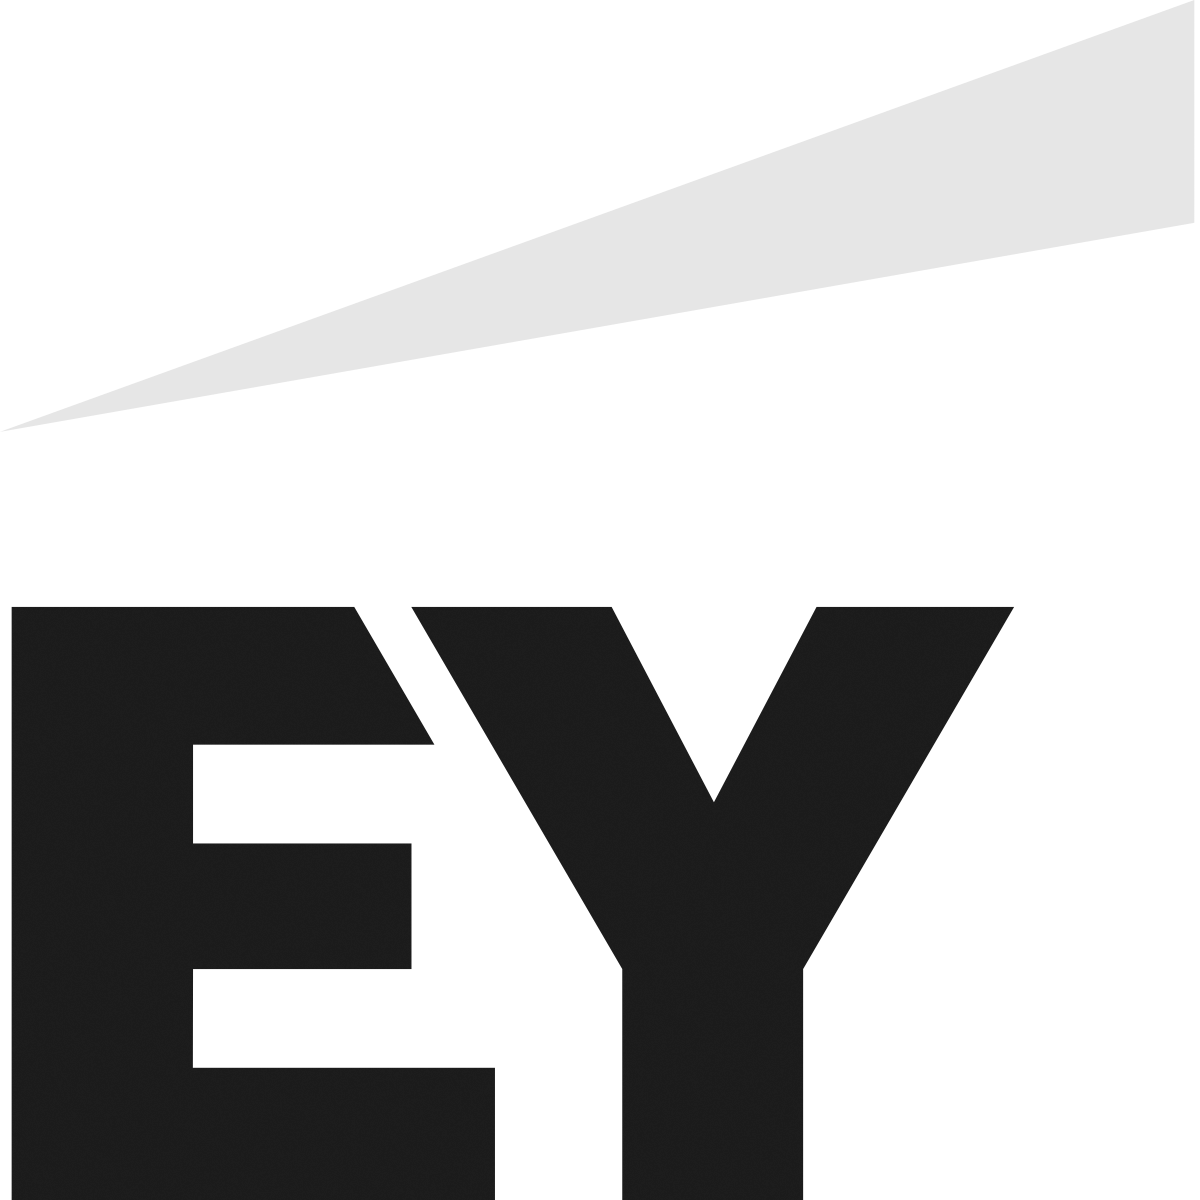 EY_logo_2019